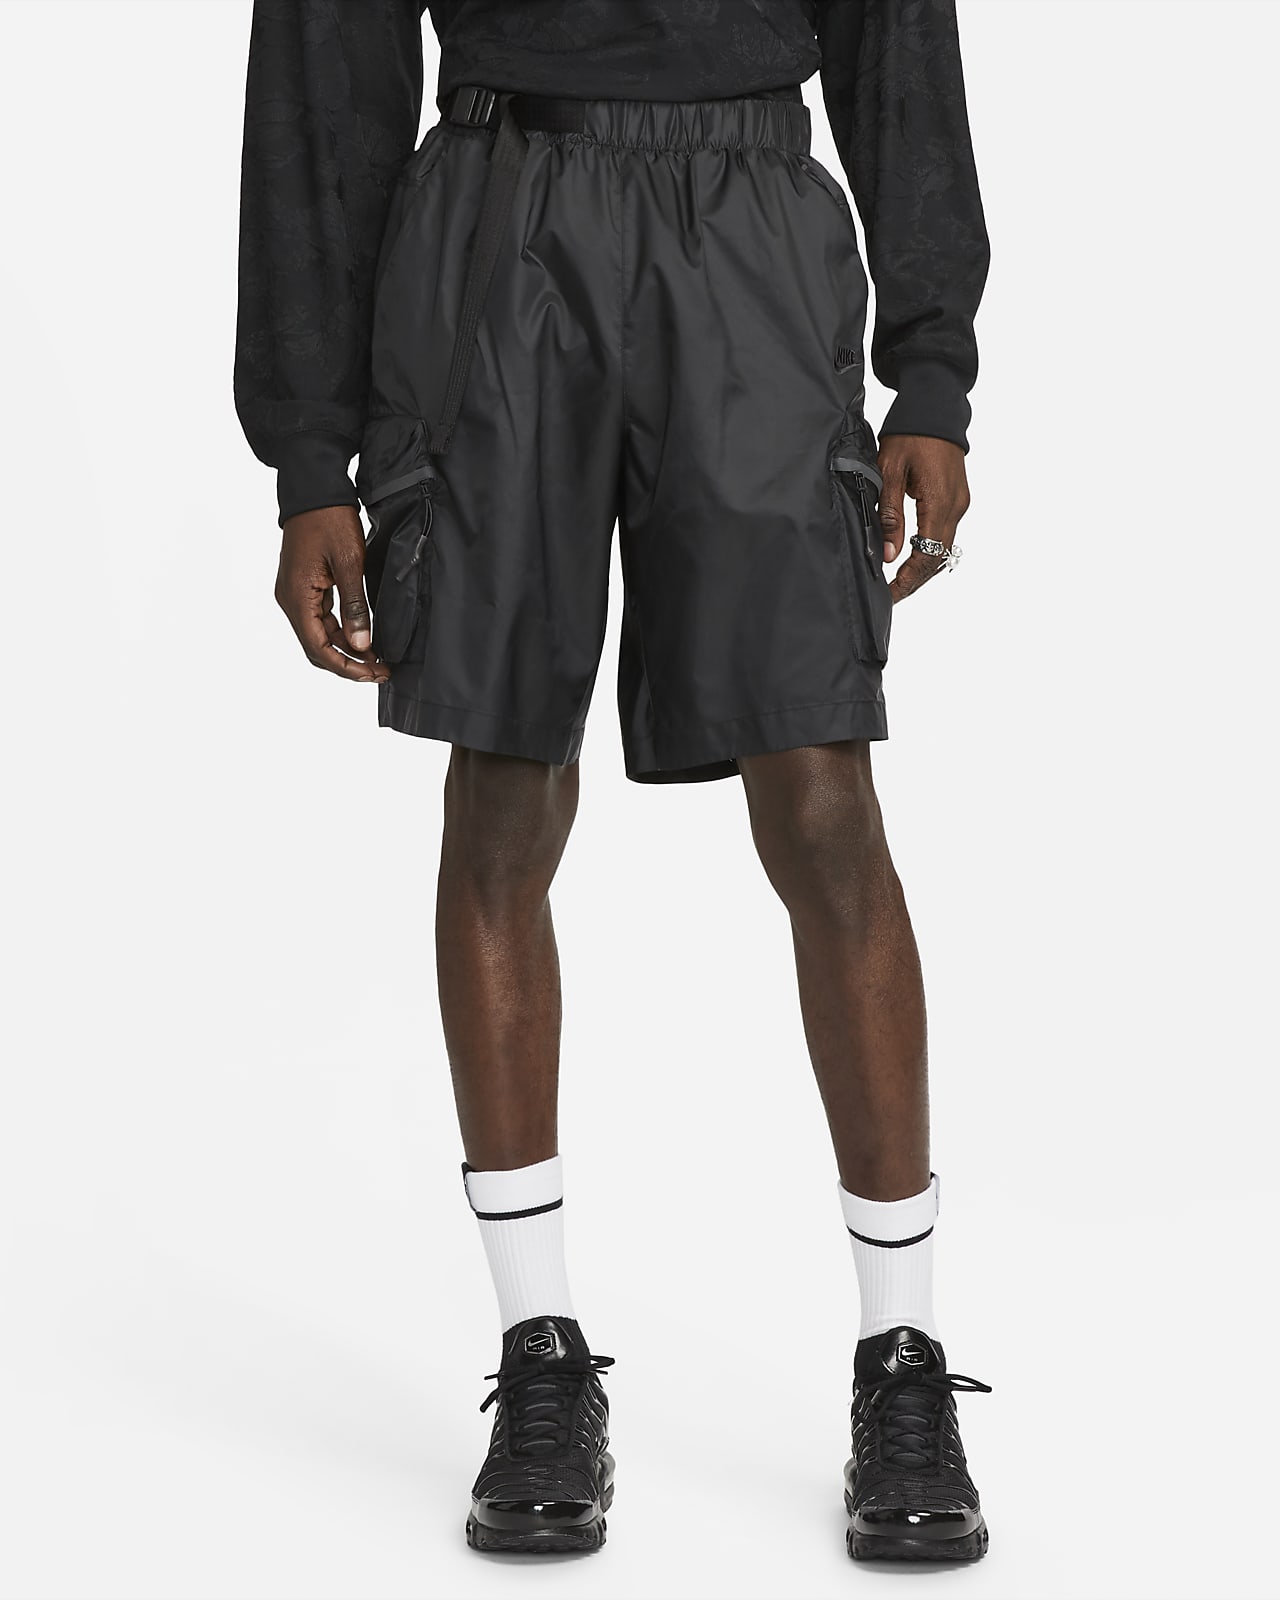 Nike Sportswear Tech Pack Men's Woven Utility Trousers. Nike LU